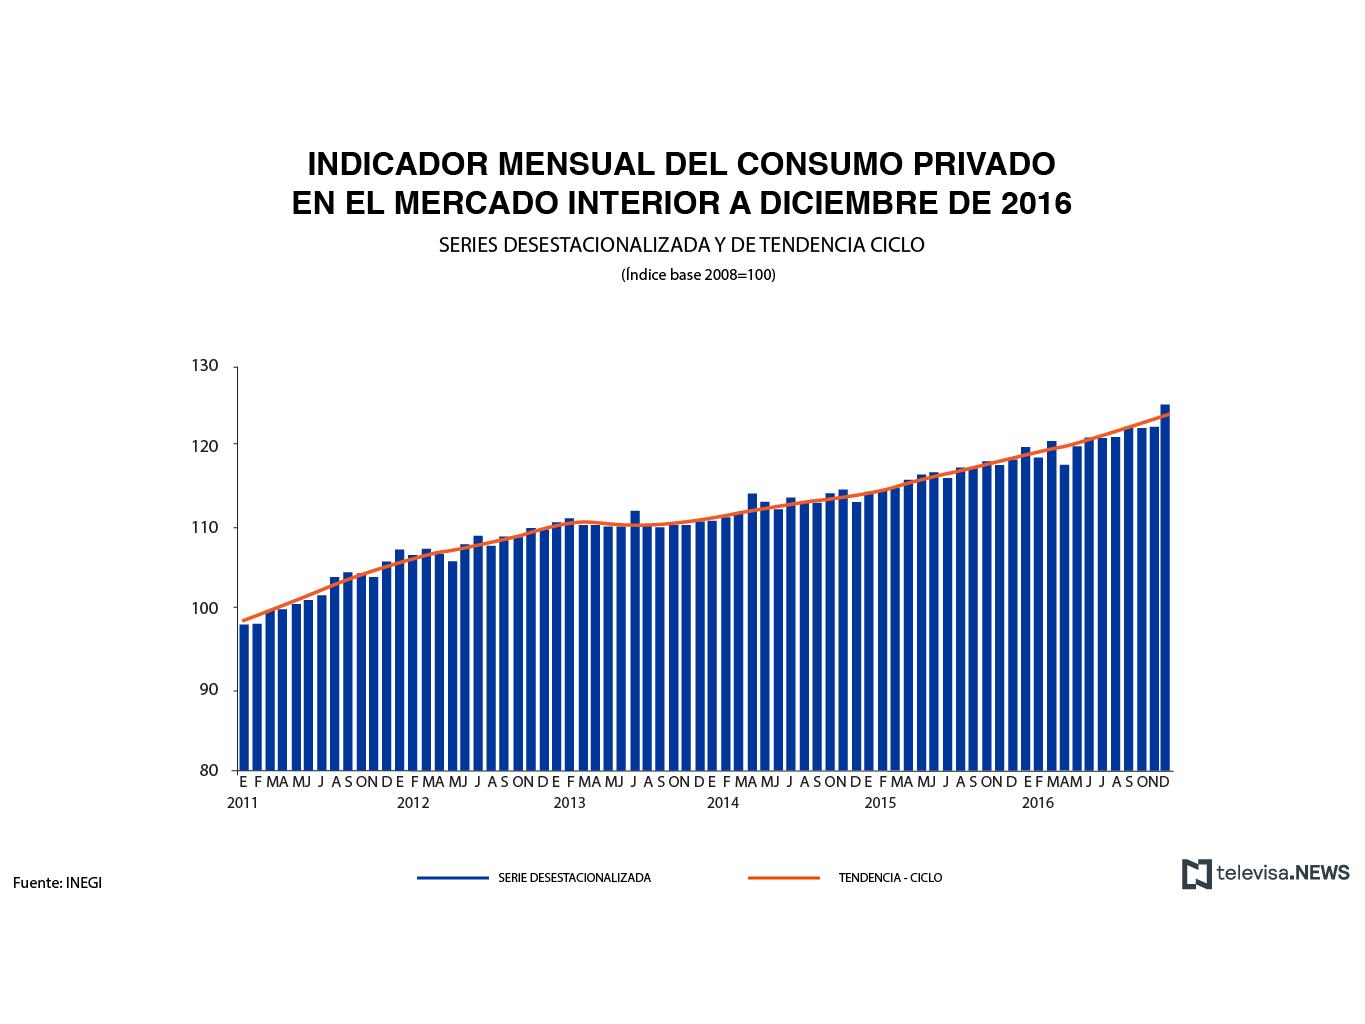 El indicador del consumo privado en el mercado interior aumentó 4.7% en diciembre en su comparación anual